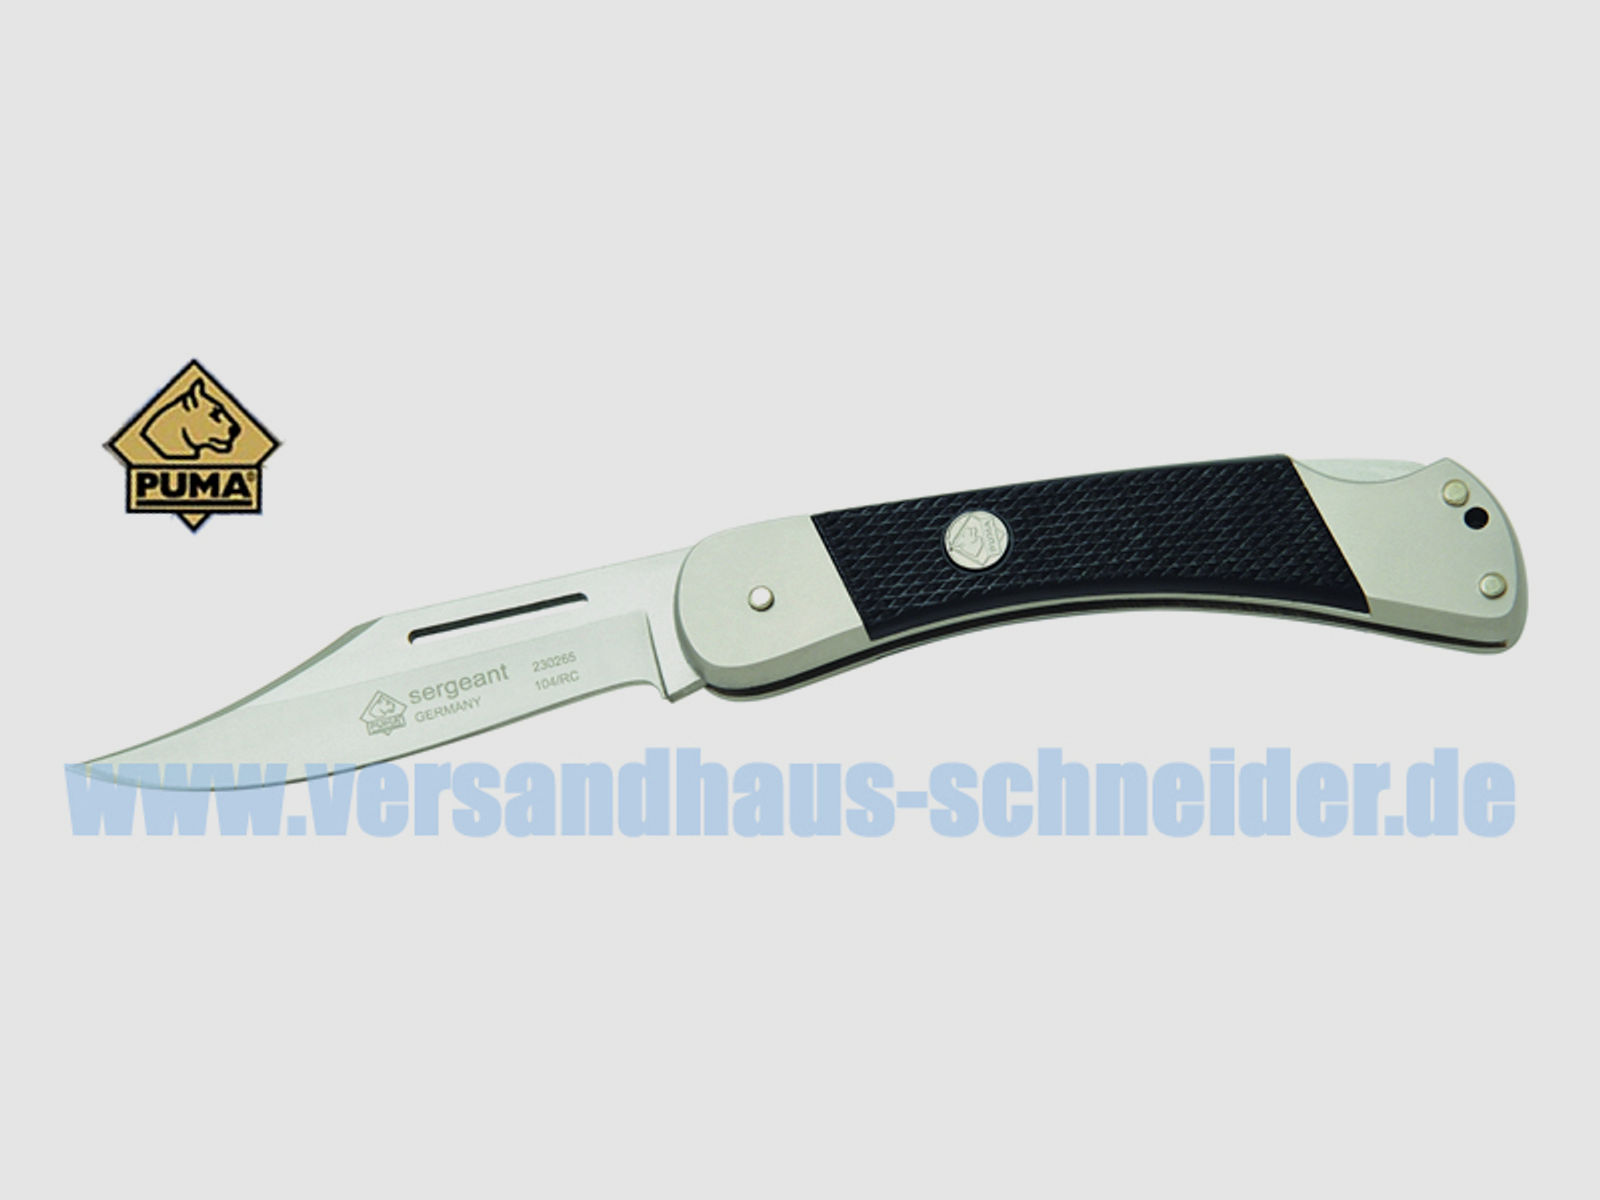 Taschenmesser Klappmesser Puma Sergeant, Stahl 1.4110, ABS-Kunststoffgriff